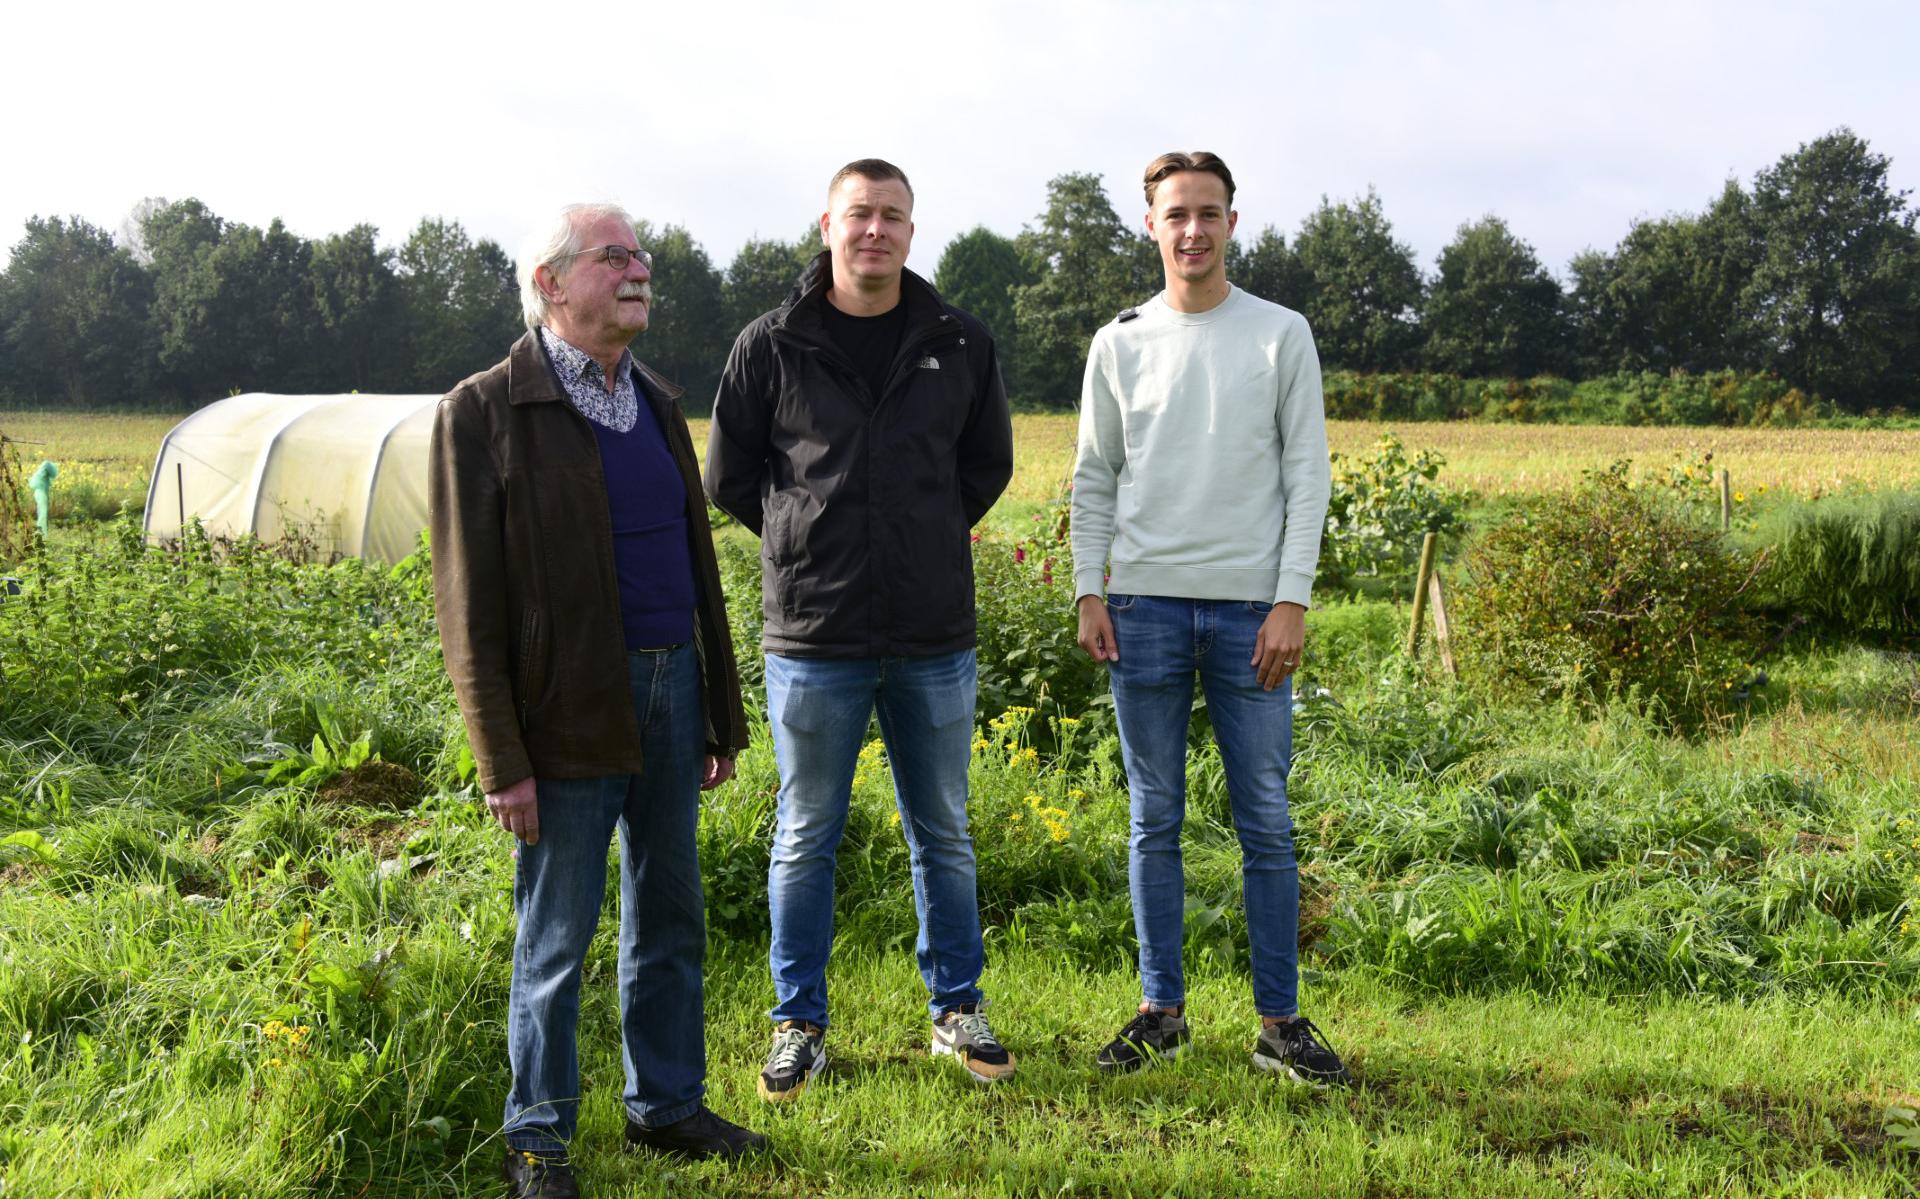 Het bestuur met v.l.n.r. : Dick van 't Veer, Maarten Mennen, Damian Kroezen.